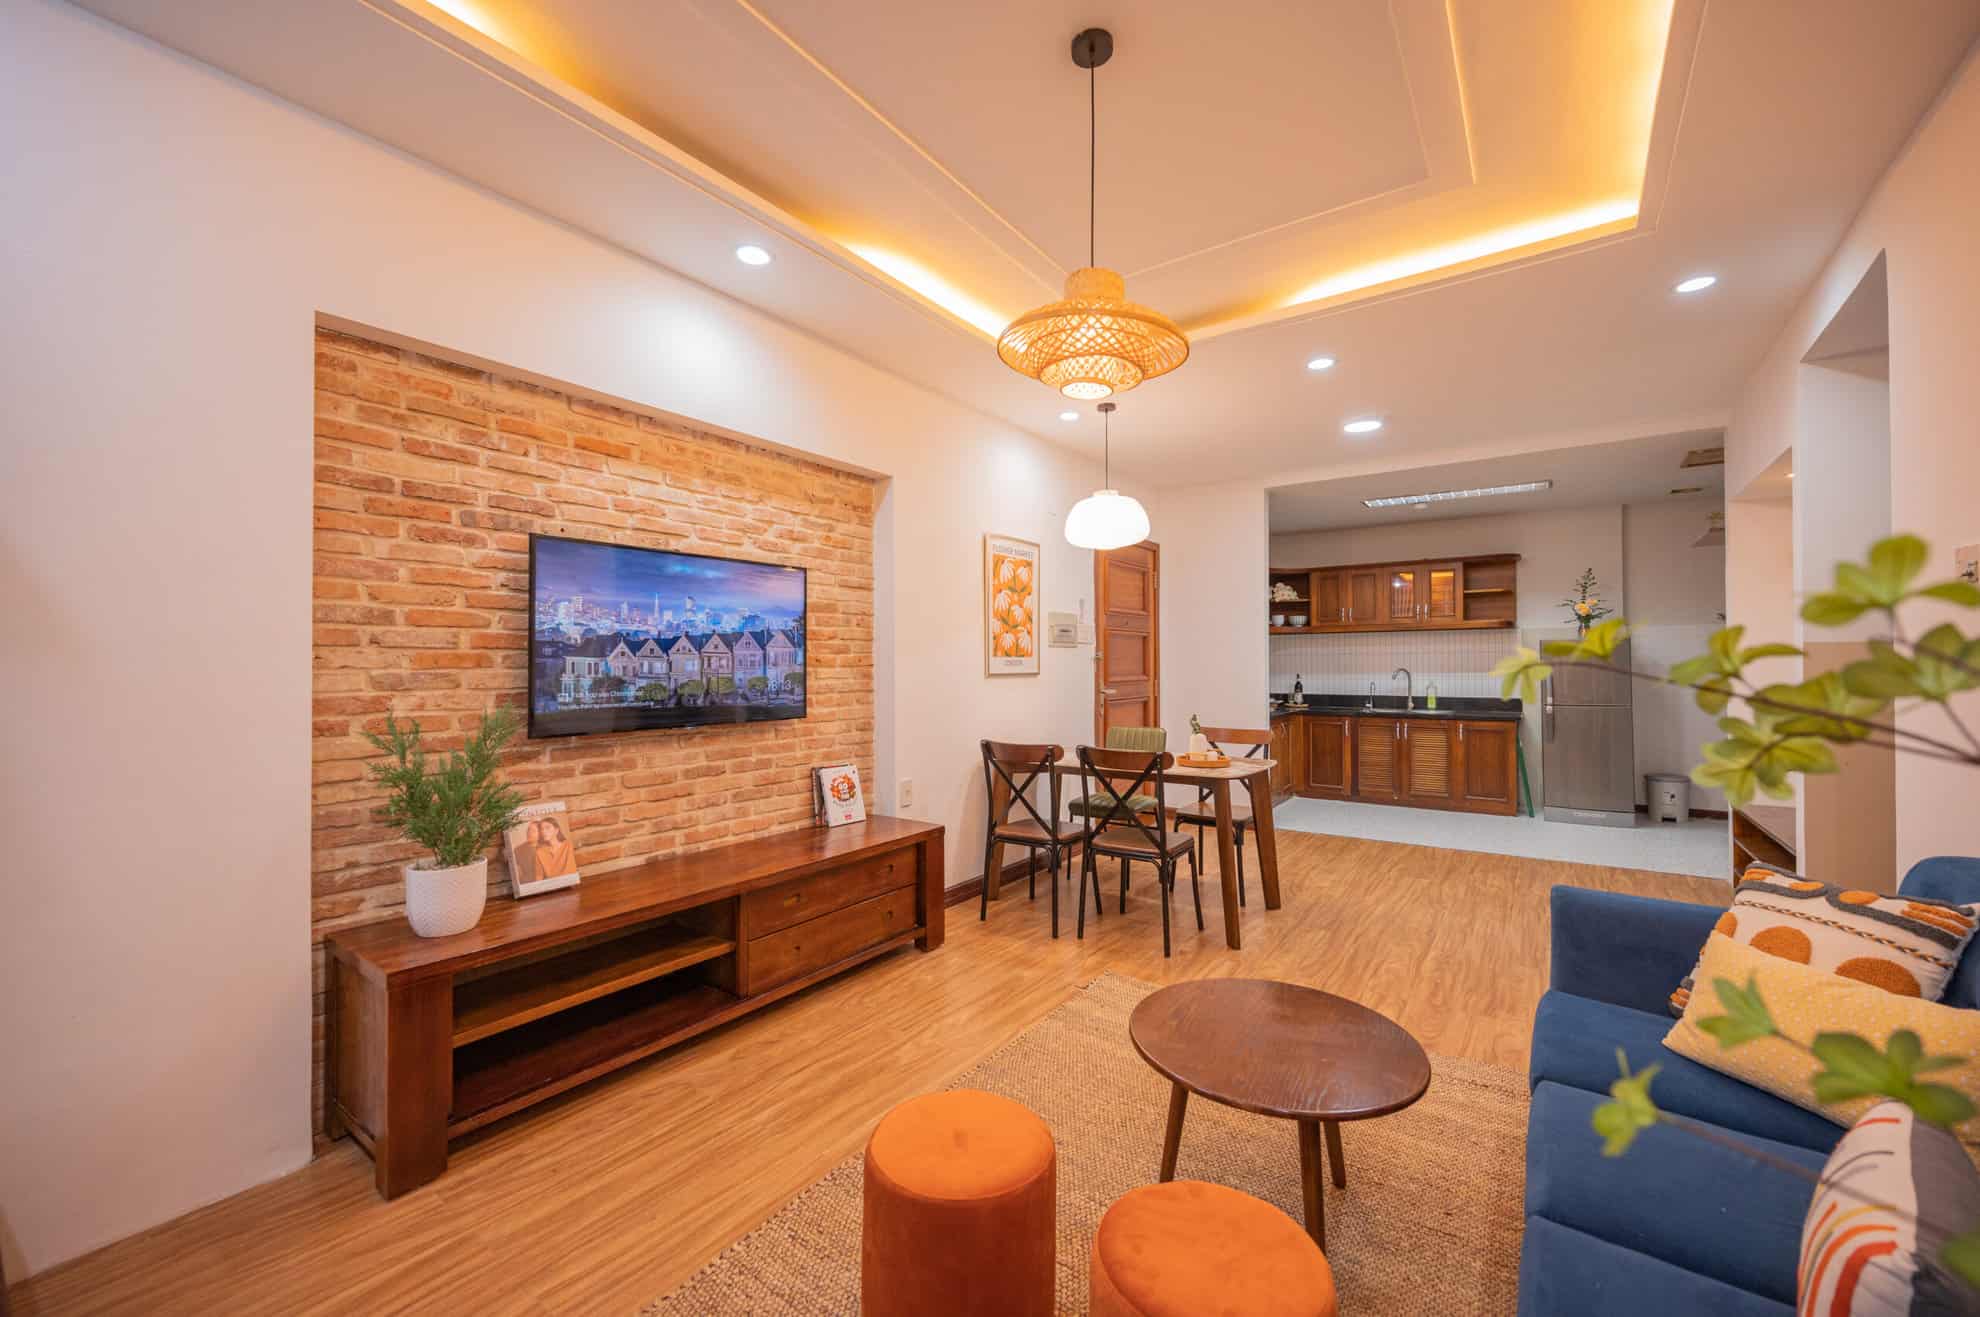 [3/2022] Dự án cải tạo căn hộ cho thuê du lịch tại Quy Nhơn - Before & After 22